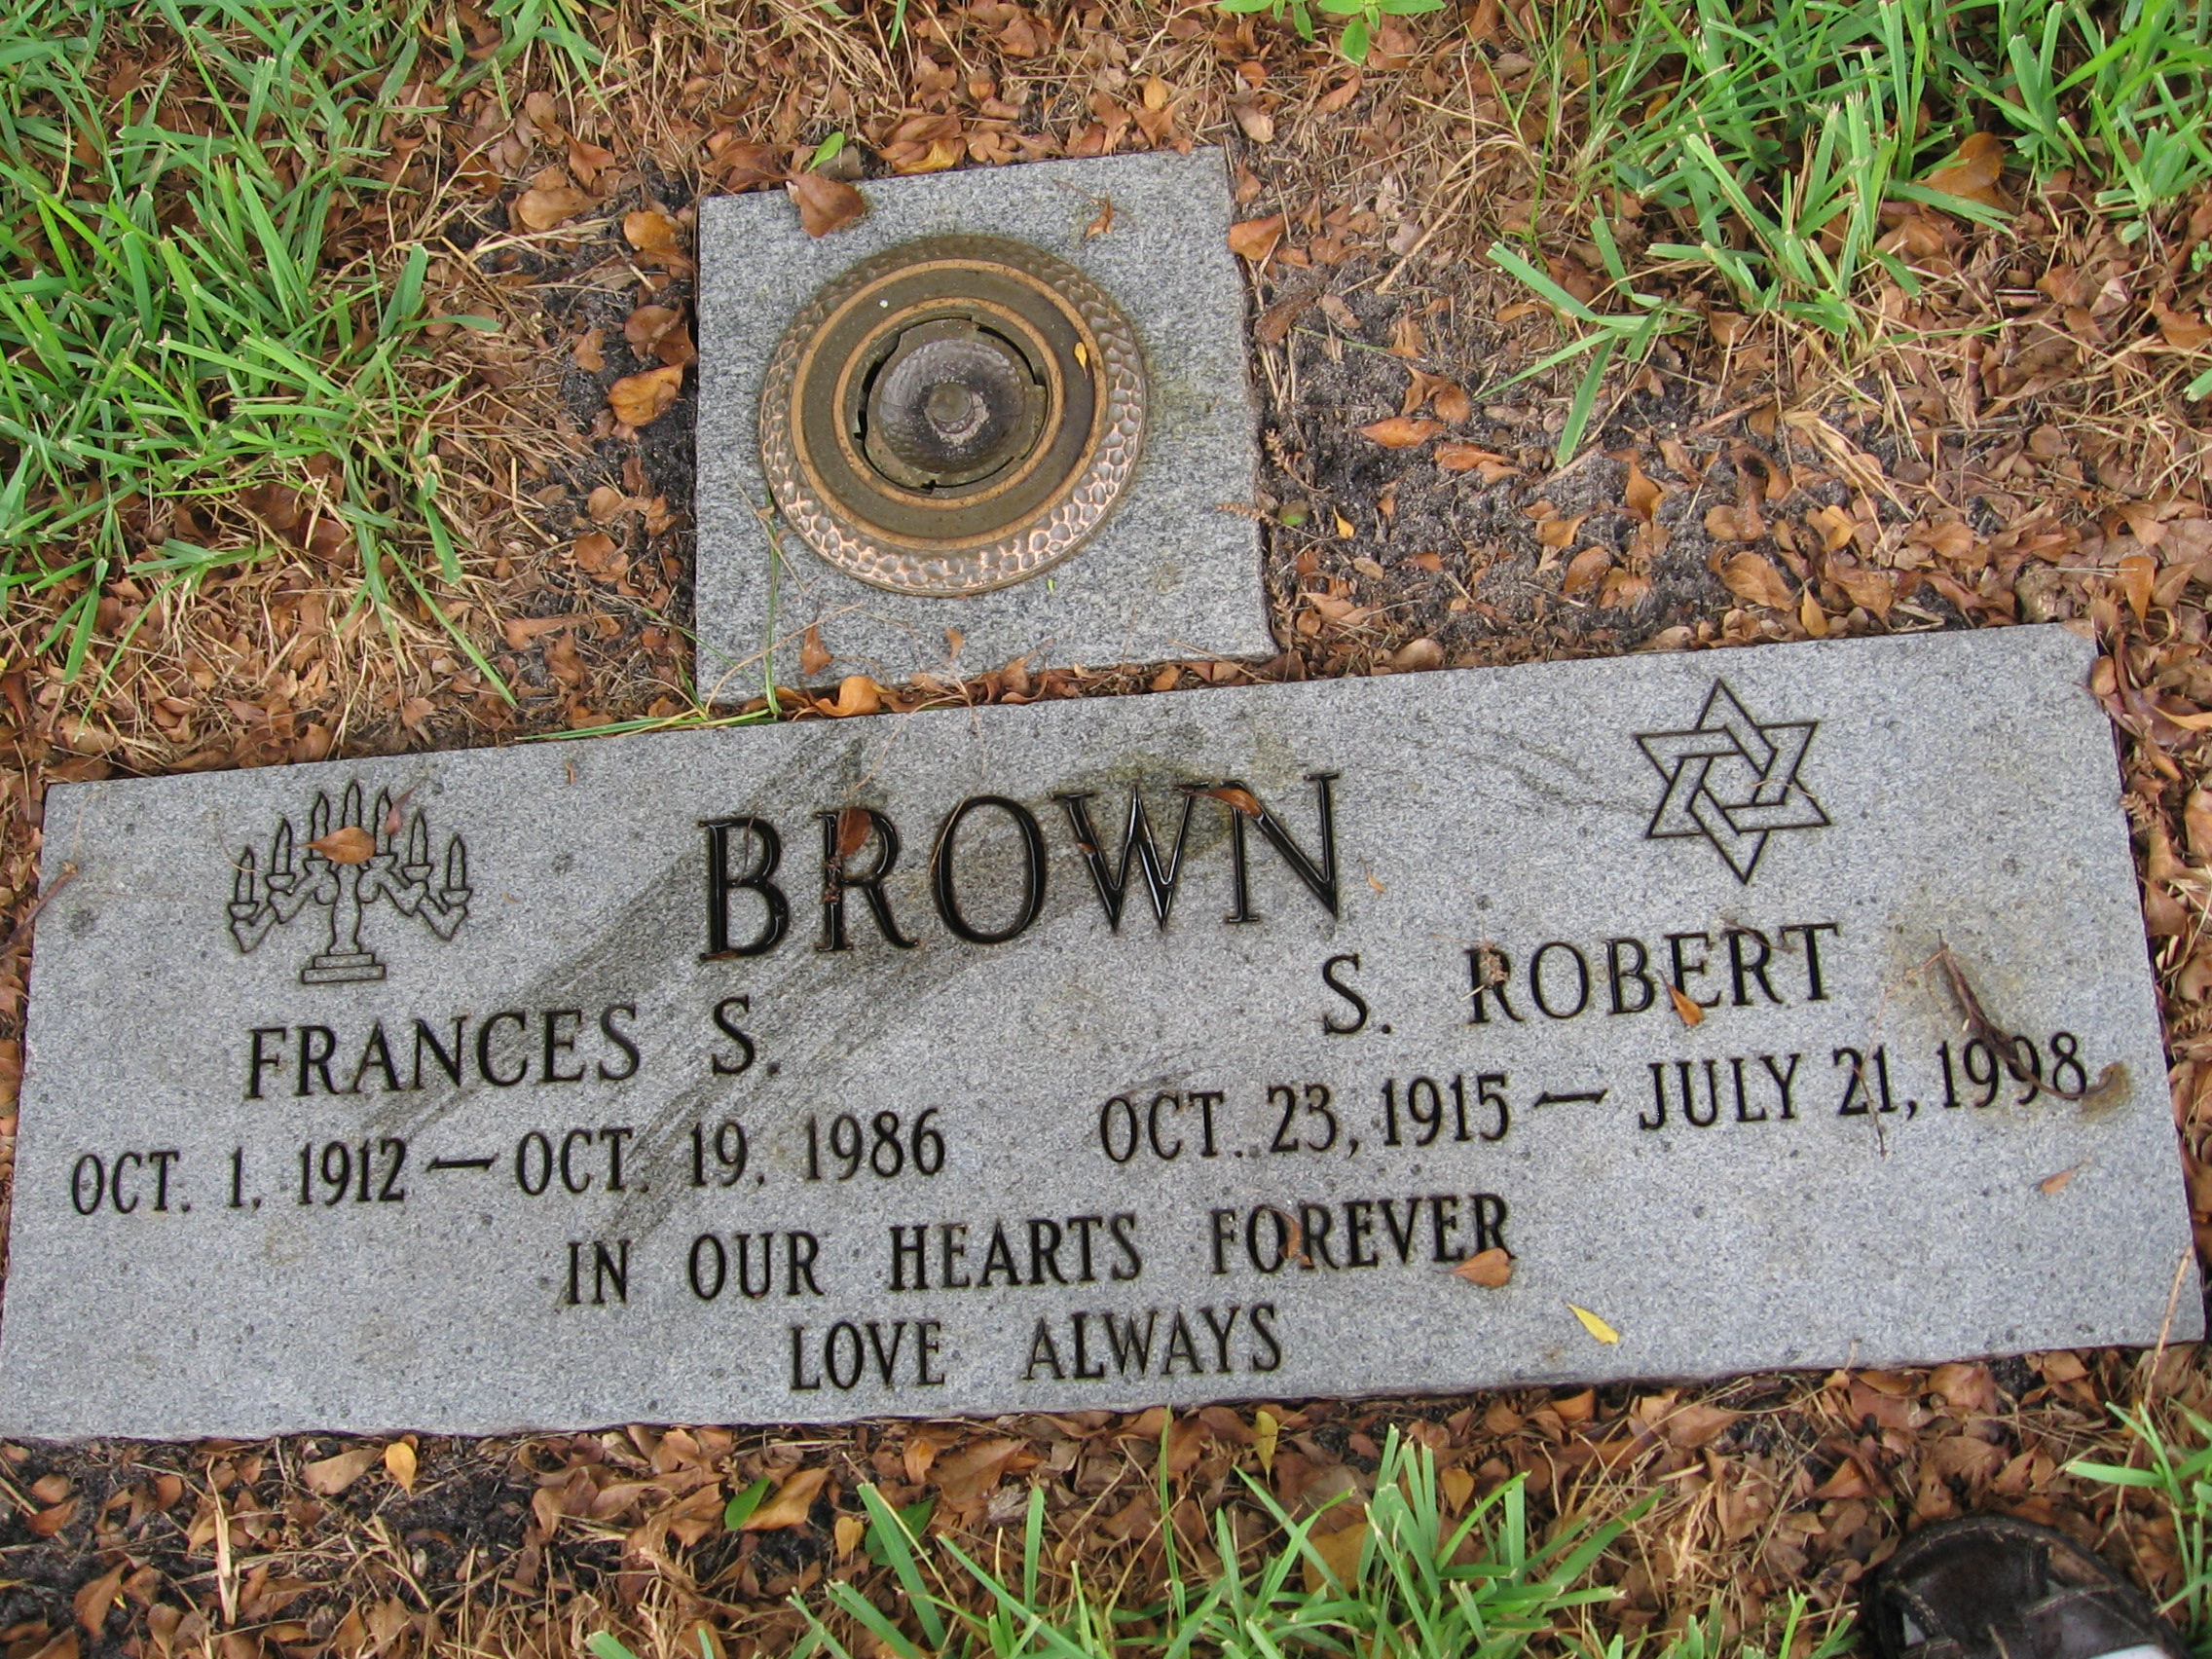 S Robert Brown